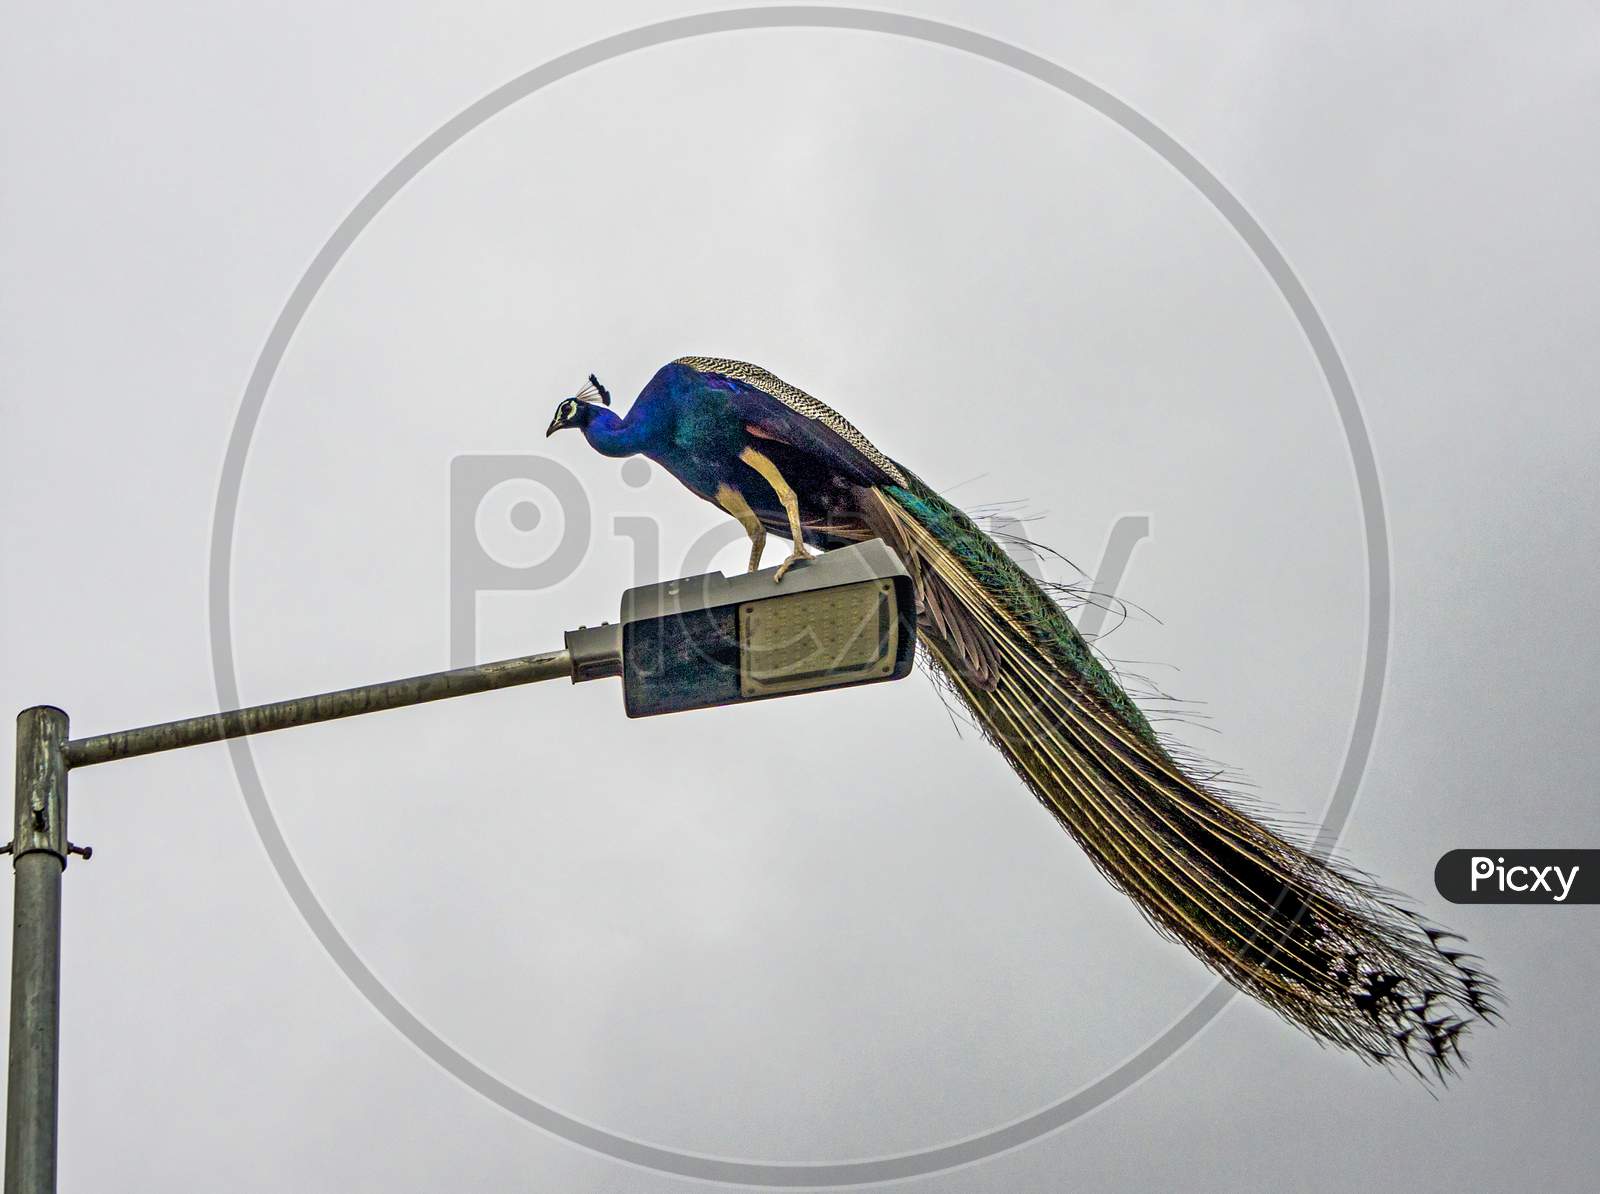 Peacock On A Light Pole